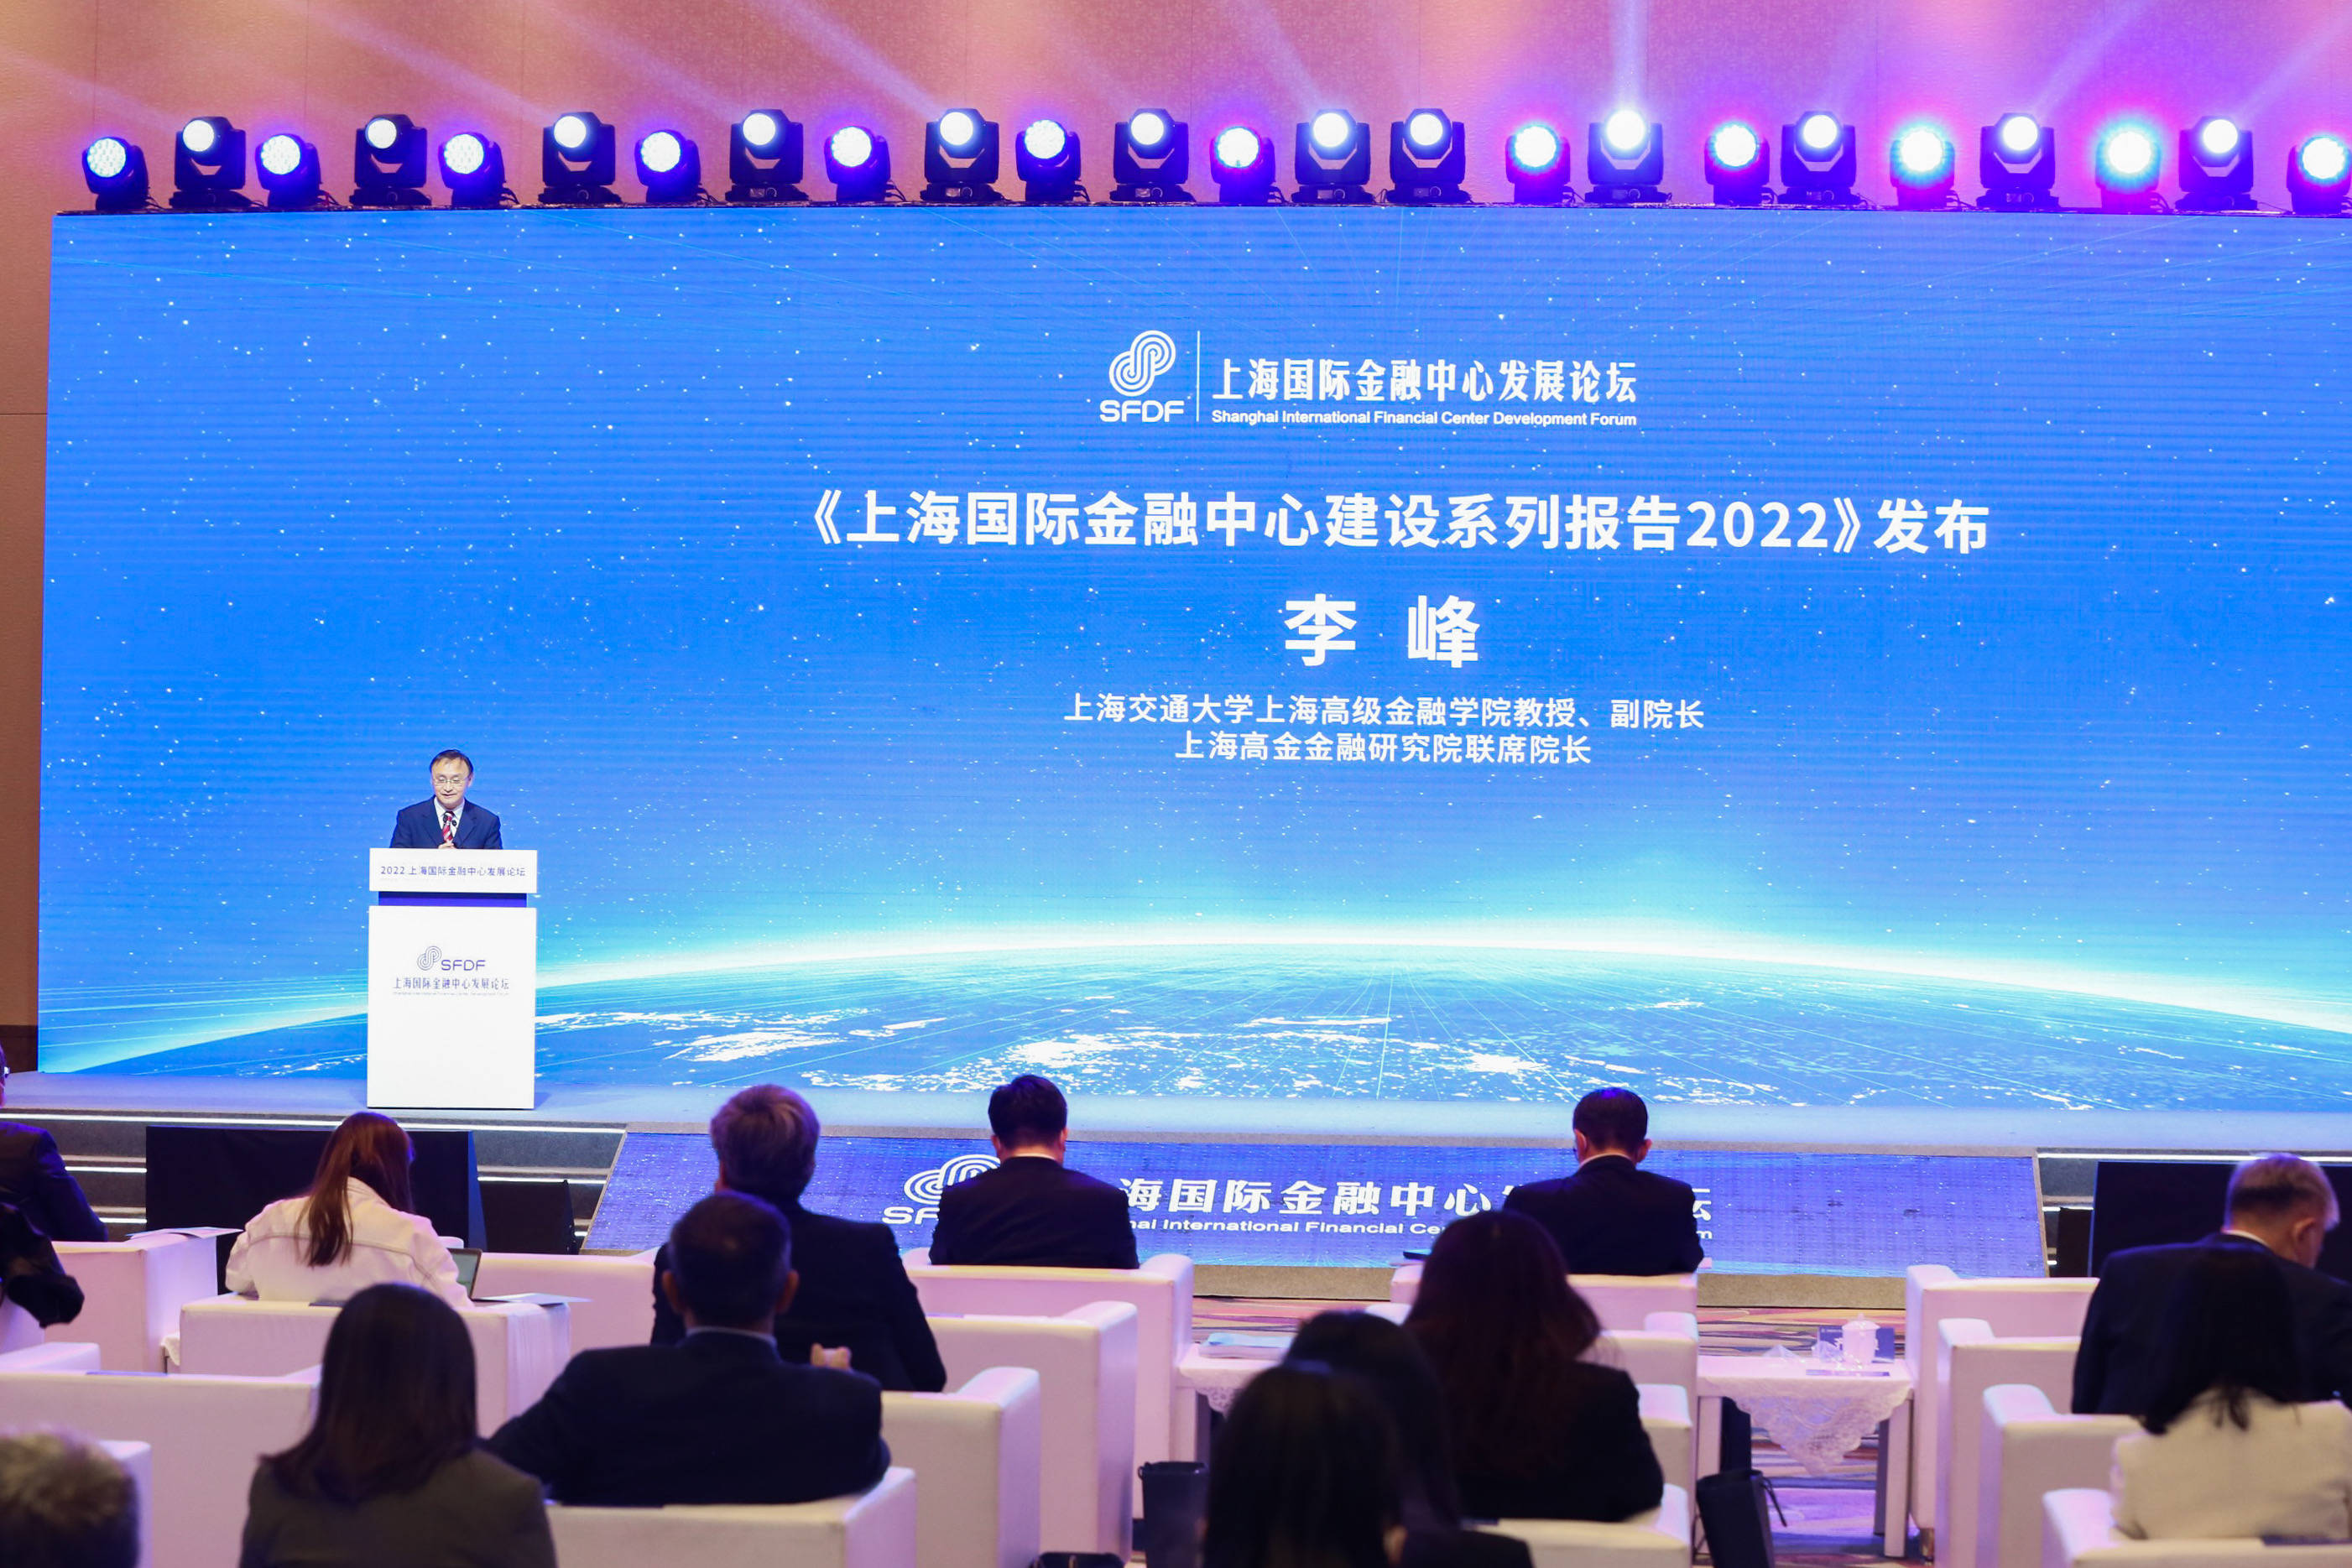 在2022上海国际金融中心发展论坛上，高金智库发布了《上海国际金融中心建设系列报告2022》（下称报告）。报告建议，通过促进国际化进程而助推市场化、法治化、数字化和绿色化，进而实现整体功能提升。通过深化与全球主要金融市场的互联互通机制和制度，以及扩大资本市场双向开放，逐步推进离岸金融和人民币资本项目的制度创新，更大范围、更宽领域、更深层次的对外开放。